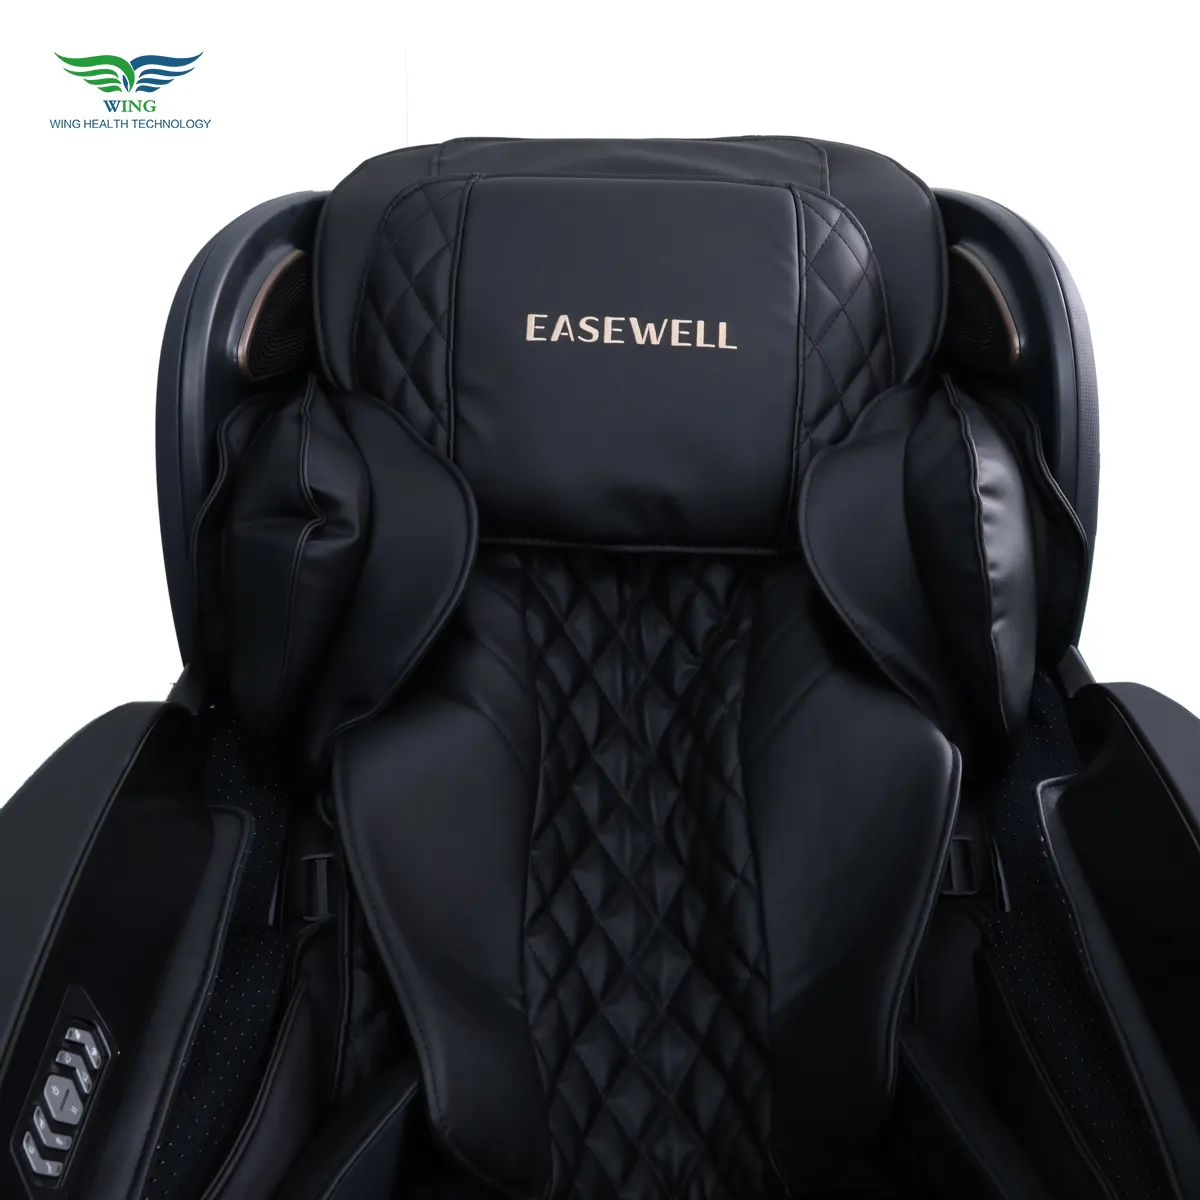 EASEWELL massaggiatore intelligente per ufficio in materiale PU di alta qualità 4D s-track sedia da massaggio con funzione a gravità Zero per corpo